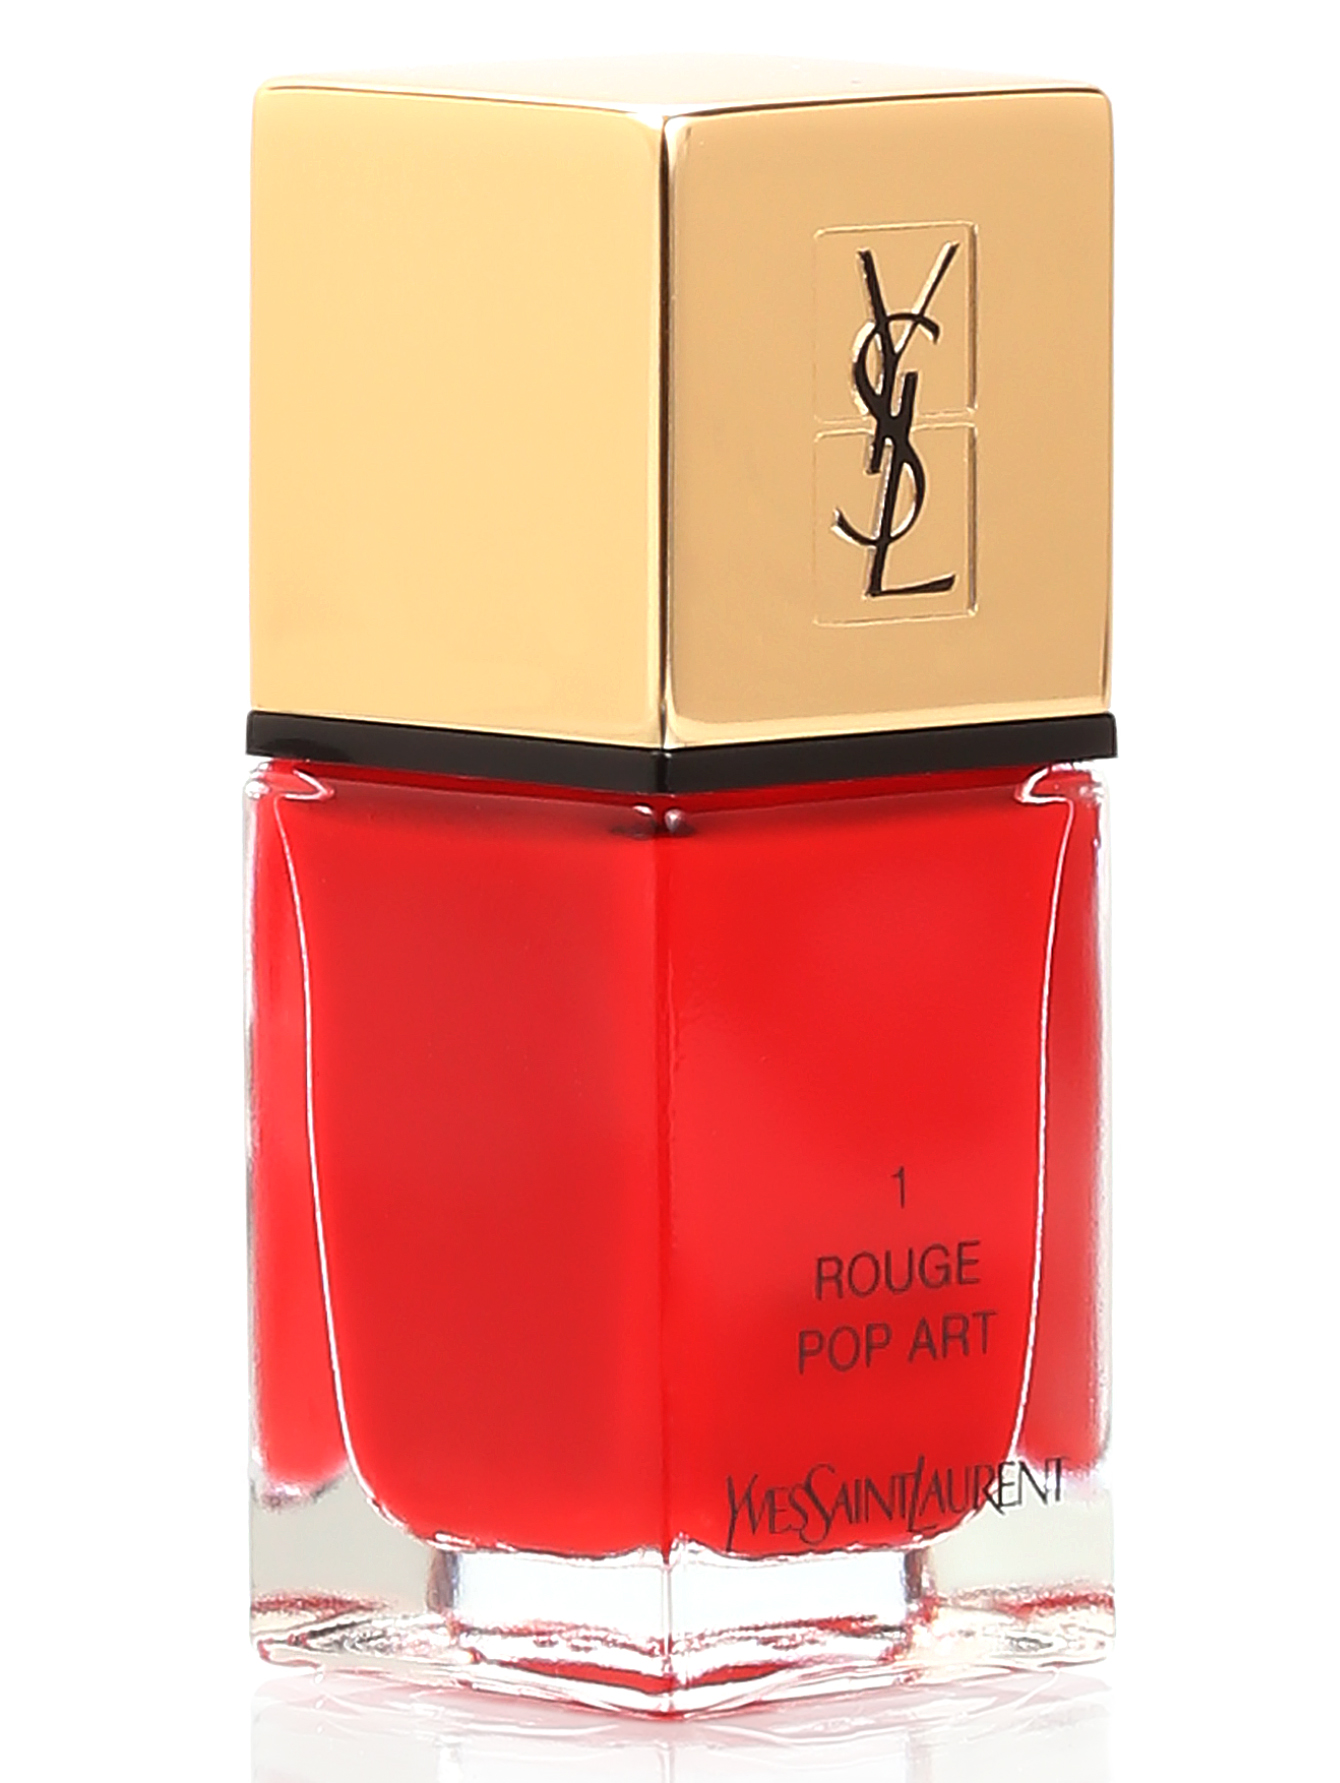 Лак для ногтей - №01 Rouge pop art, La Laque Couture, 10ml - Общий вид